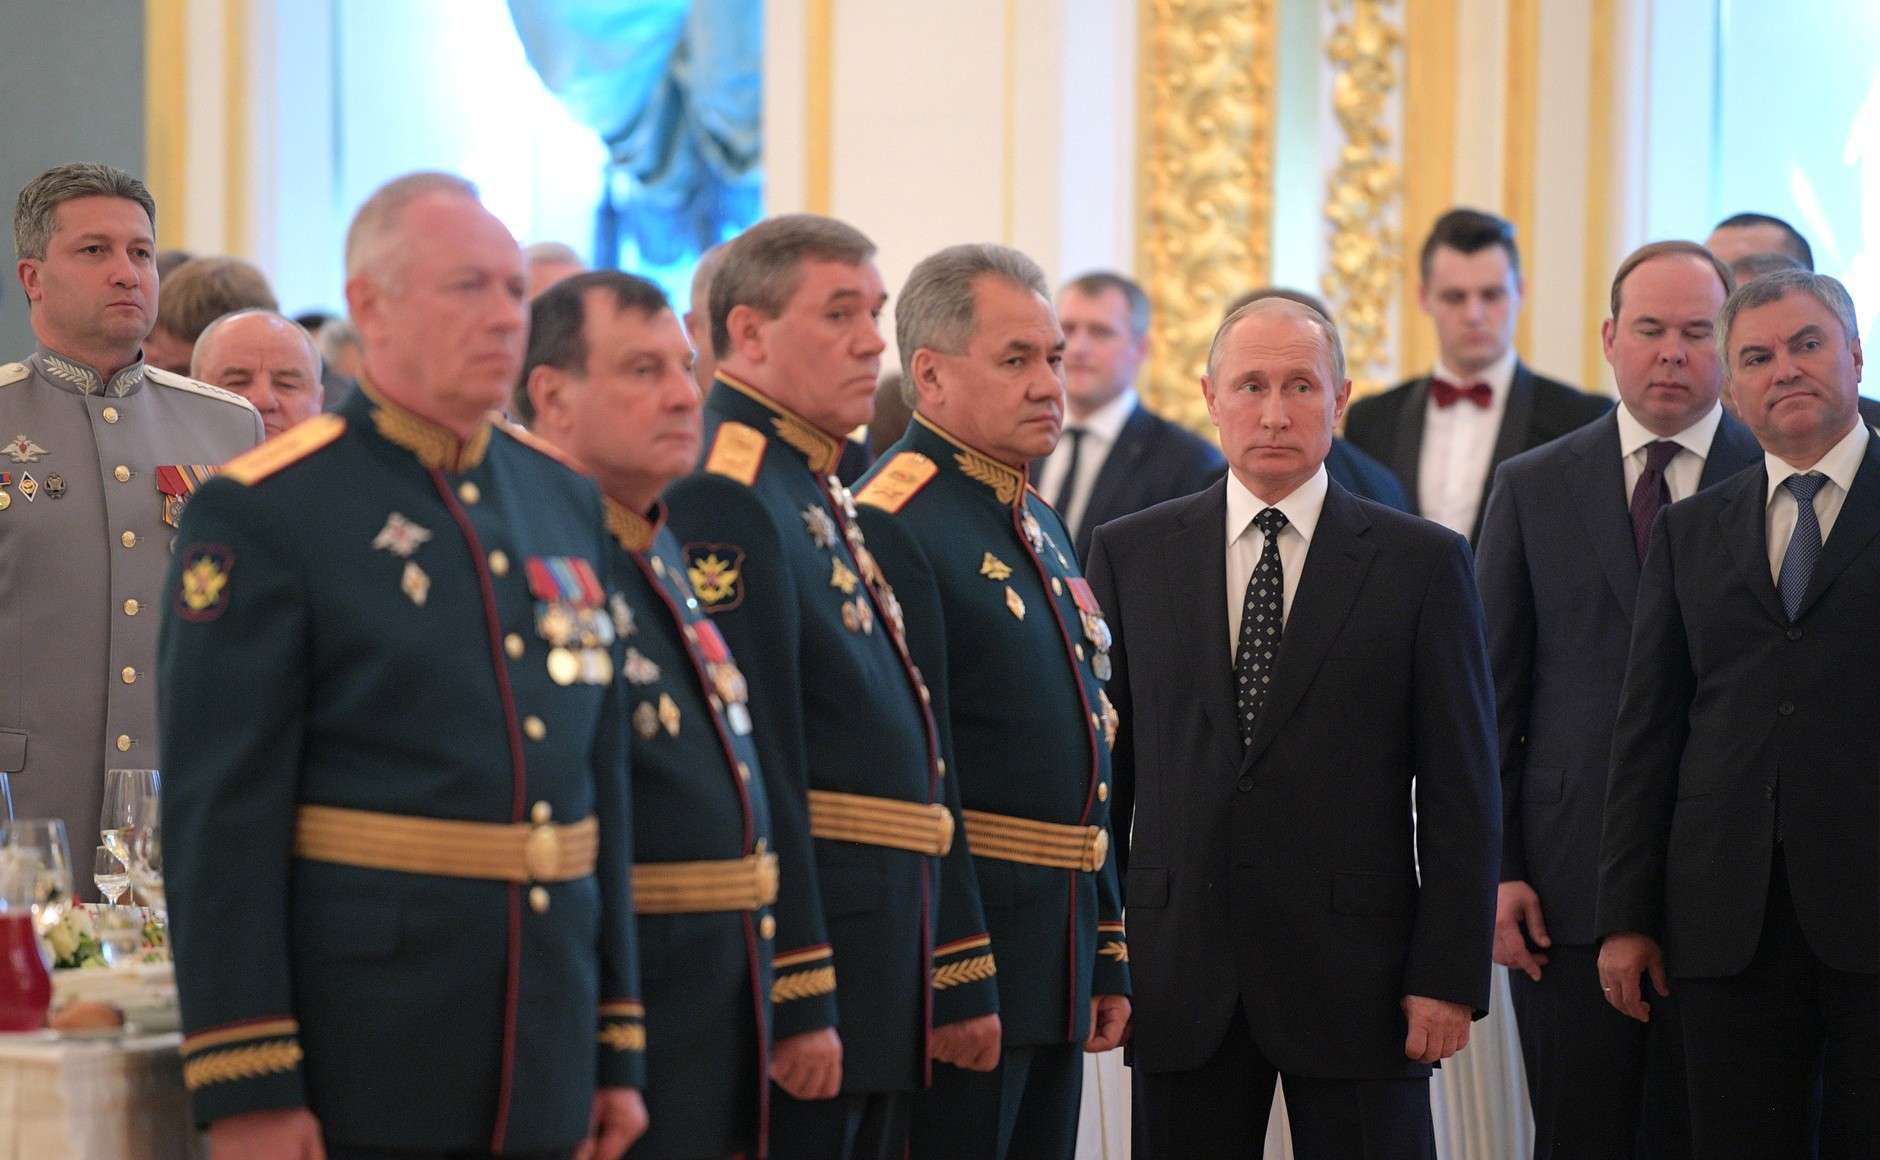 Τι ξεχνά ο Πούτιν εδώ και 20 χρόνια; Τη στρατιωτική ισχύ